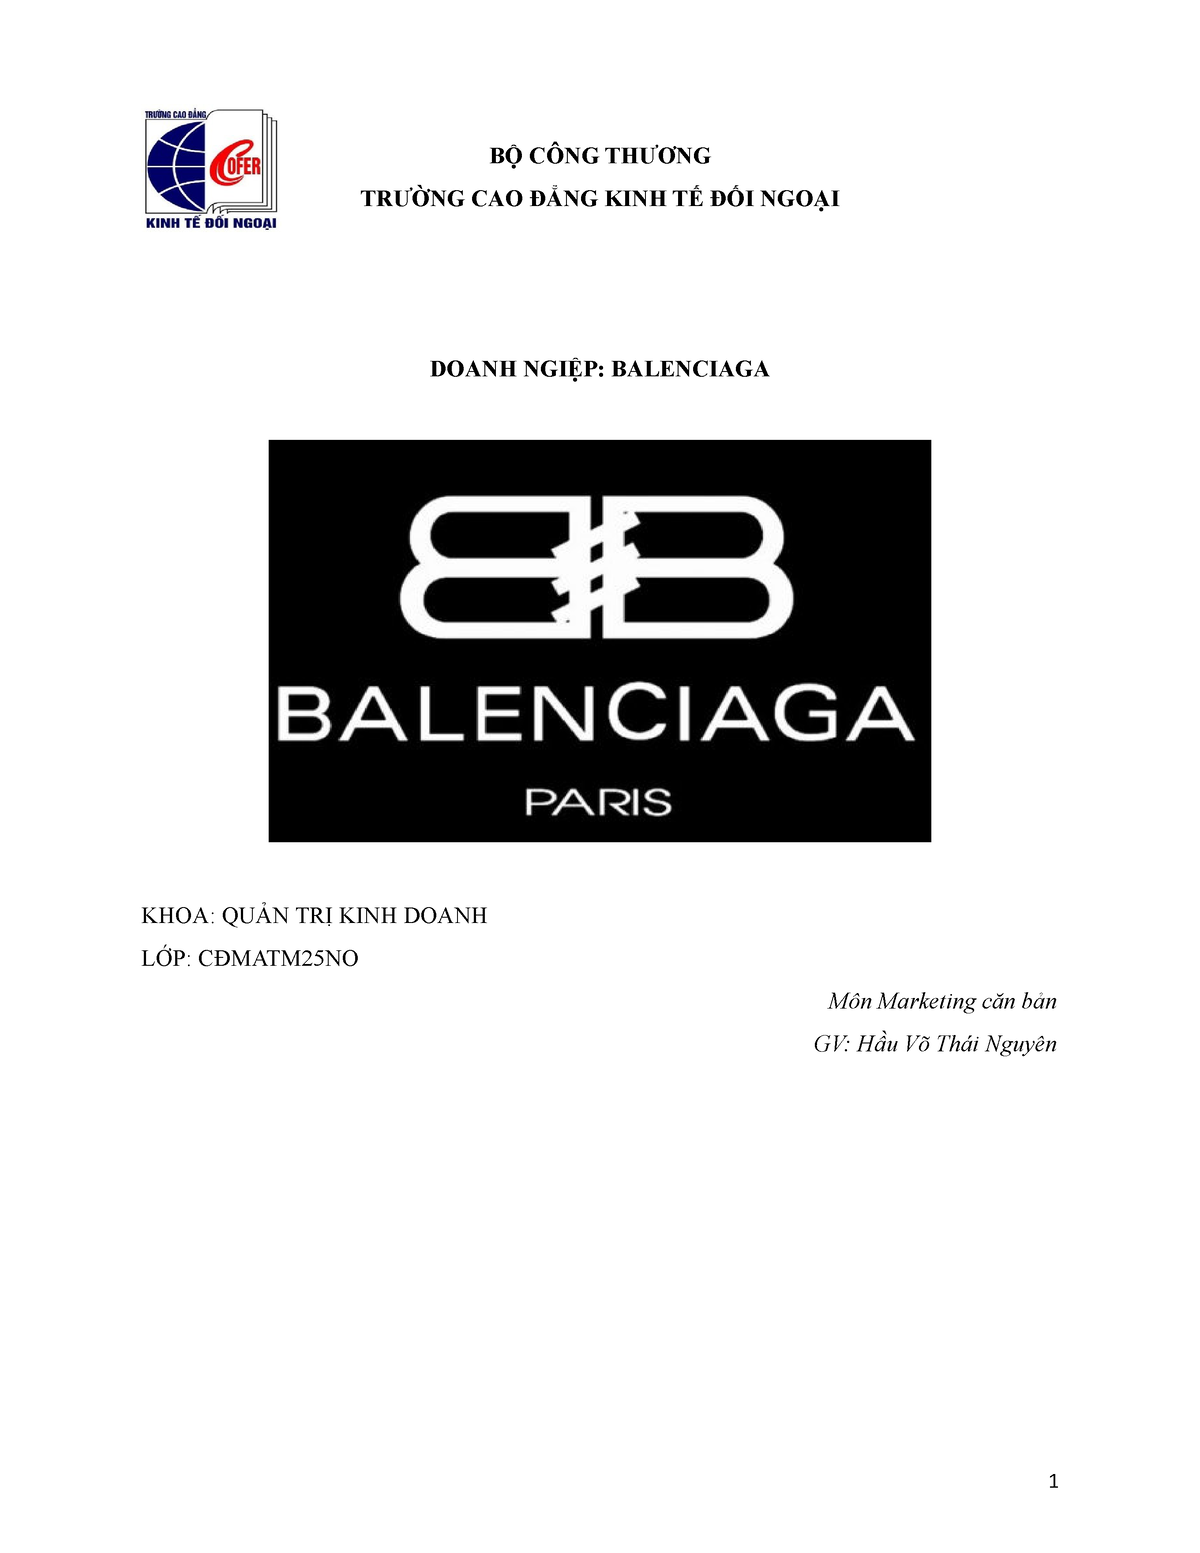 Balenciaga Logo  Chìa khóa của thành công chính là tối giản  Lakbayvn